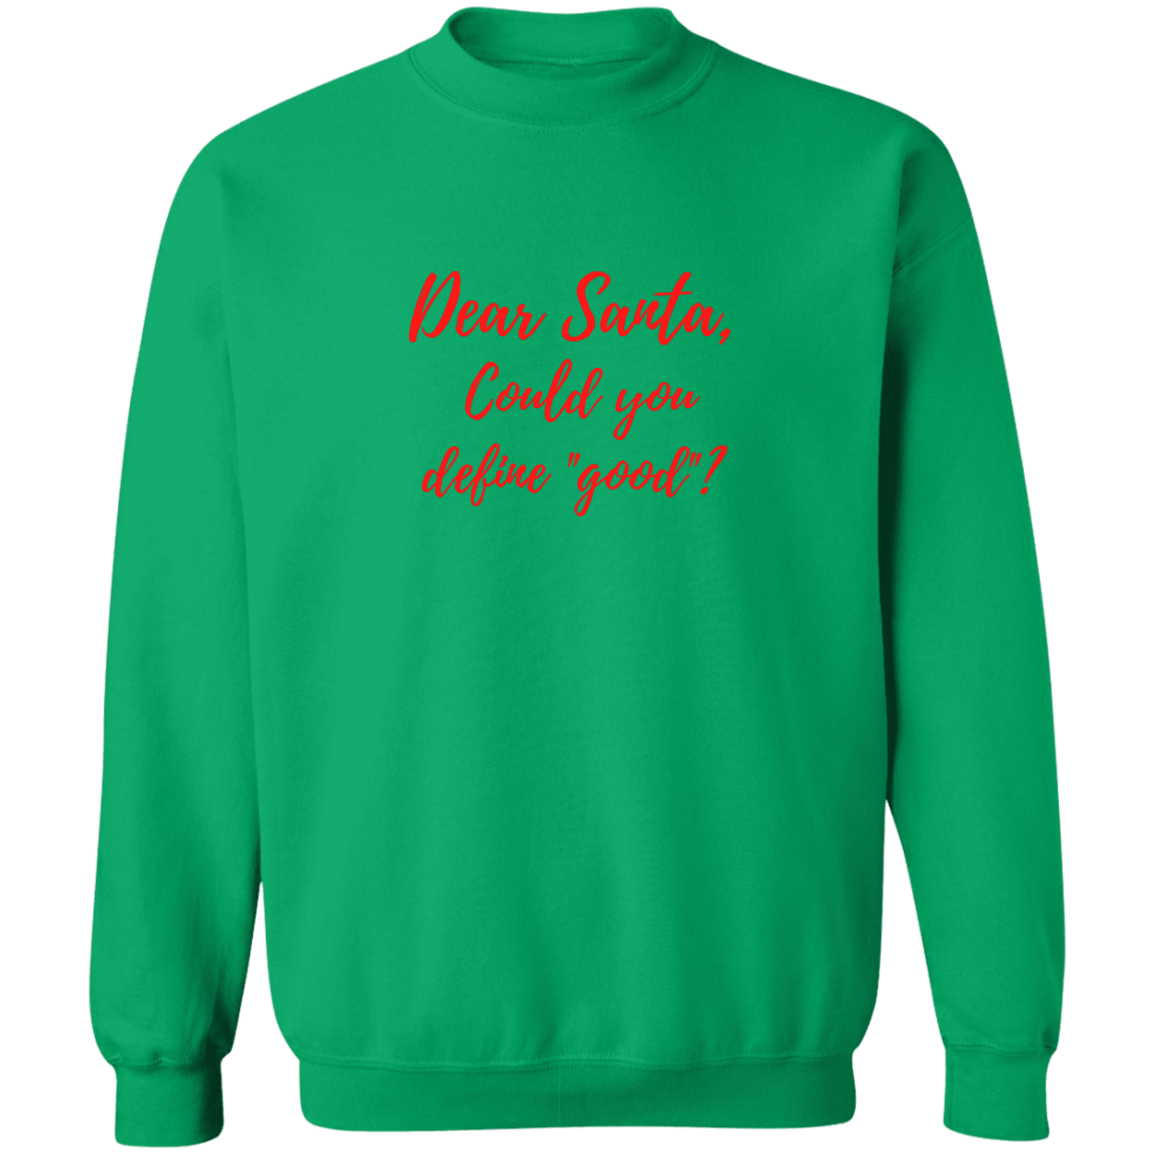 Dear Santa-Define Good? - Crewneck Pullover Sweatshirt